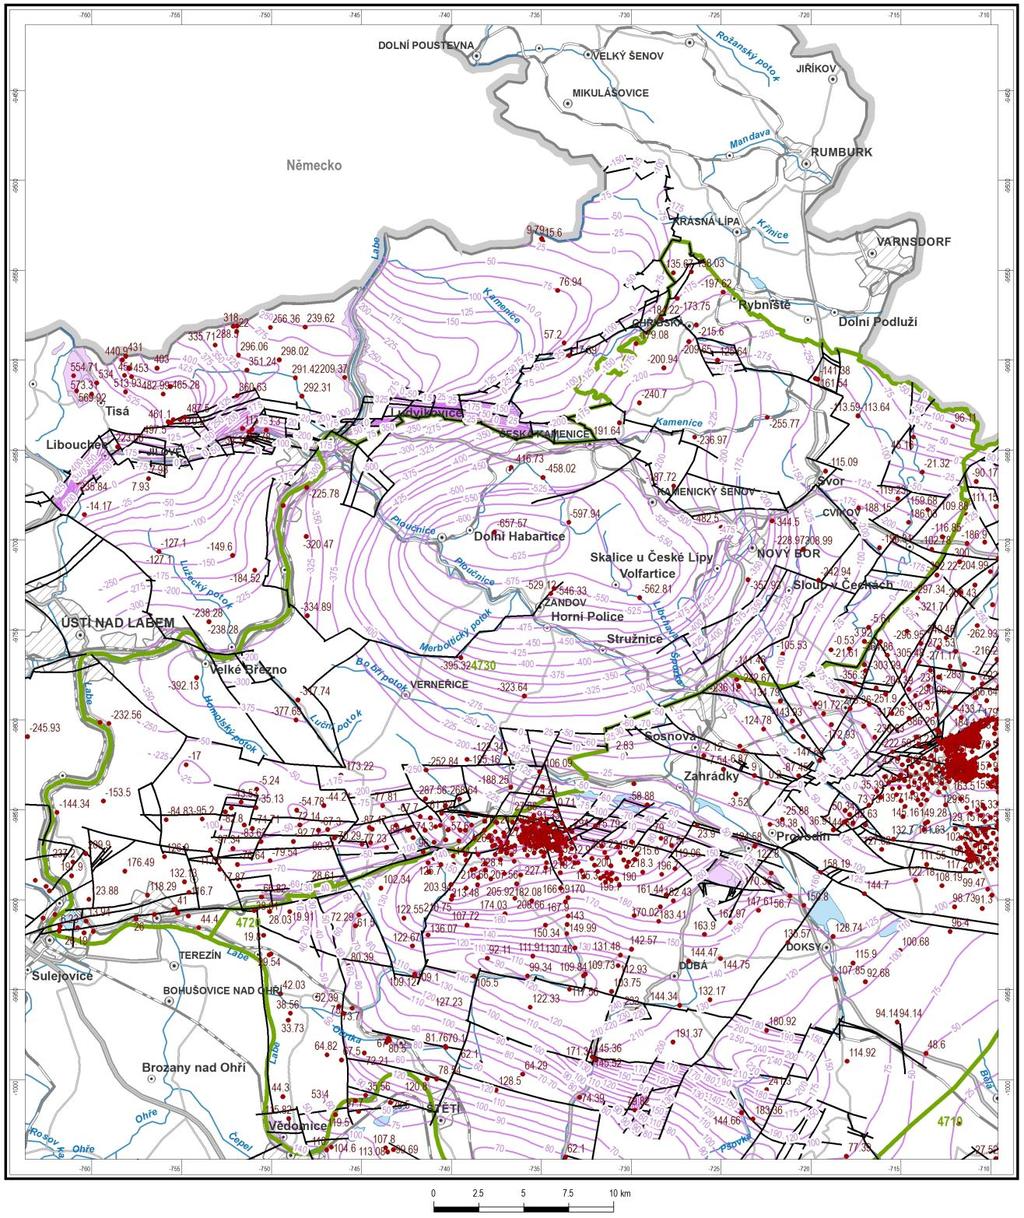 Obrázek 4-5 Izoliniová mapa povrchu kolektoru A (báze turonu) na území rajonu 4730 a v jeho okolí, zkonstruovaná na základě interpretace rozhraní ve vybraných vrtech.